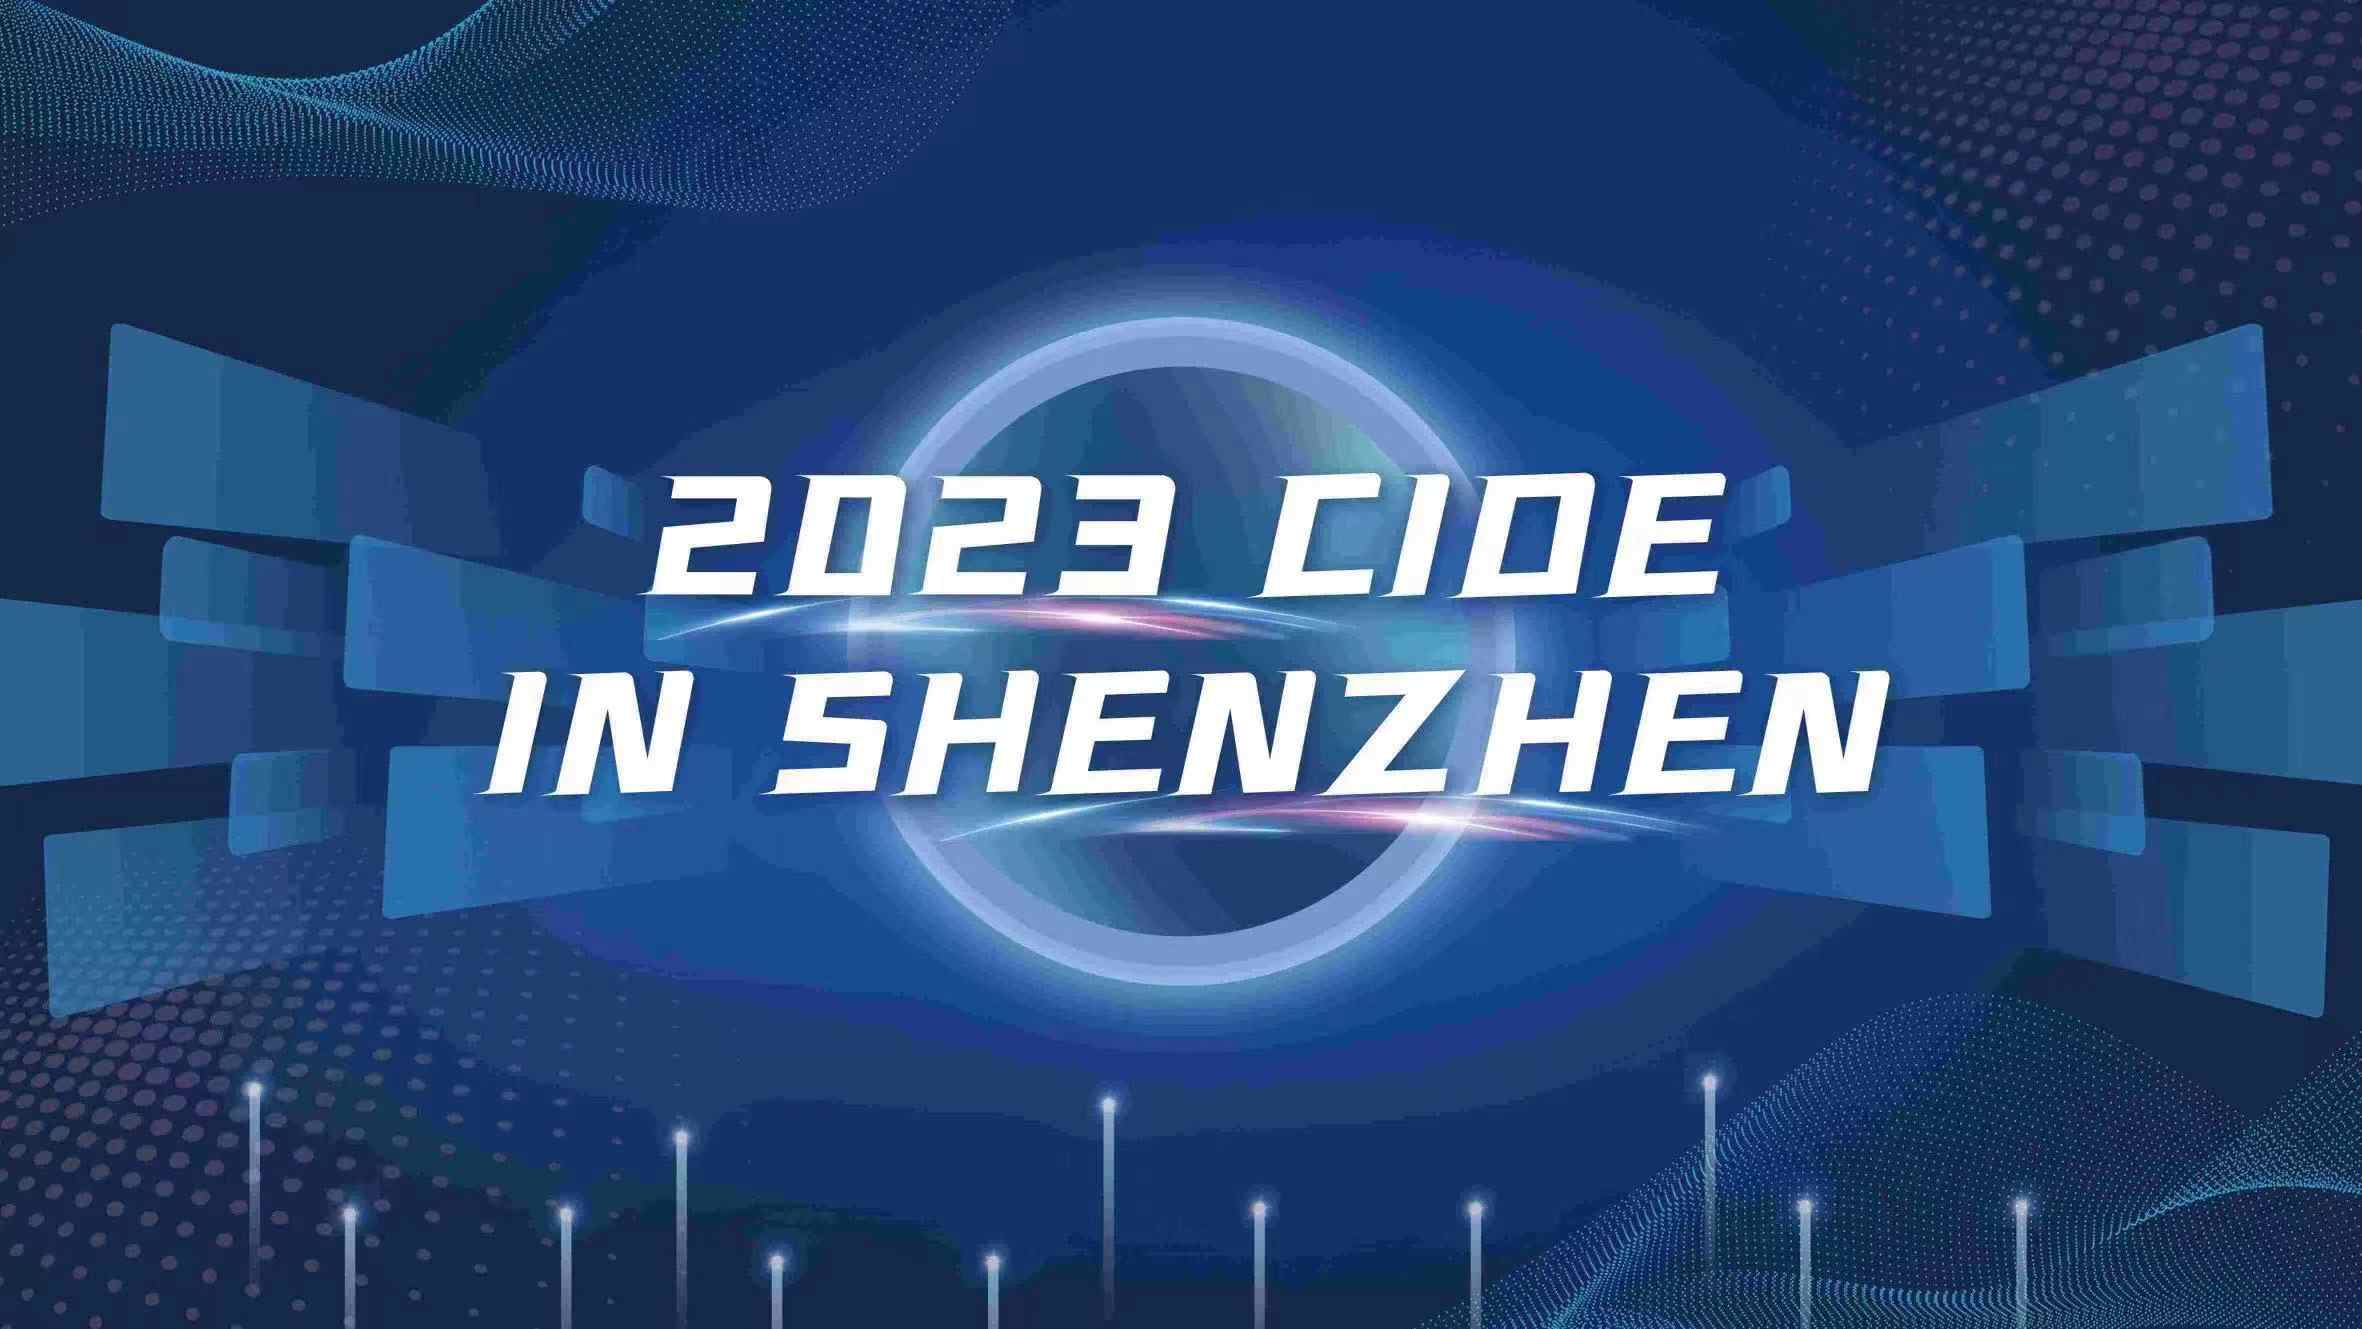  Seikofire's Successful Participation in the 2023 CIOE in Shenzhen